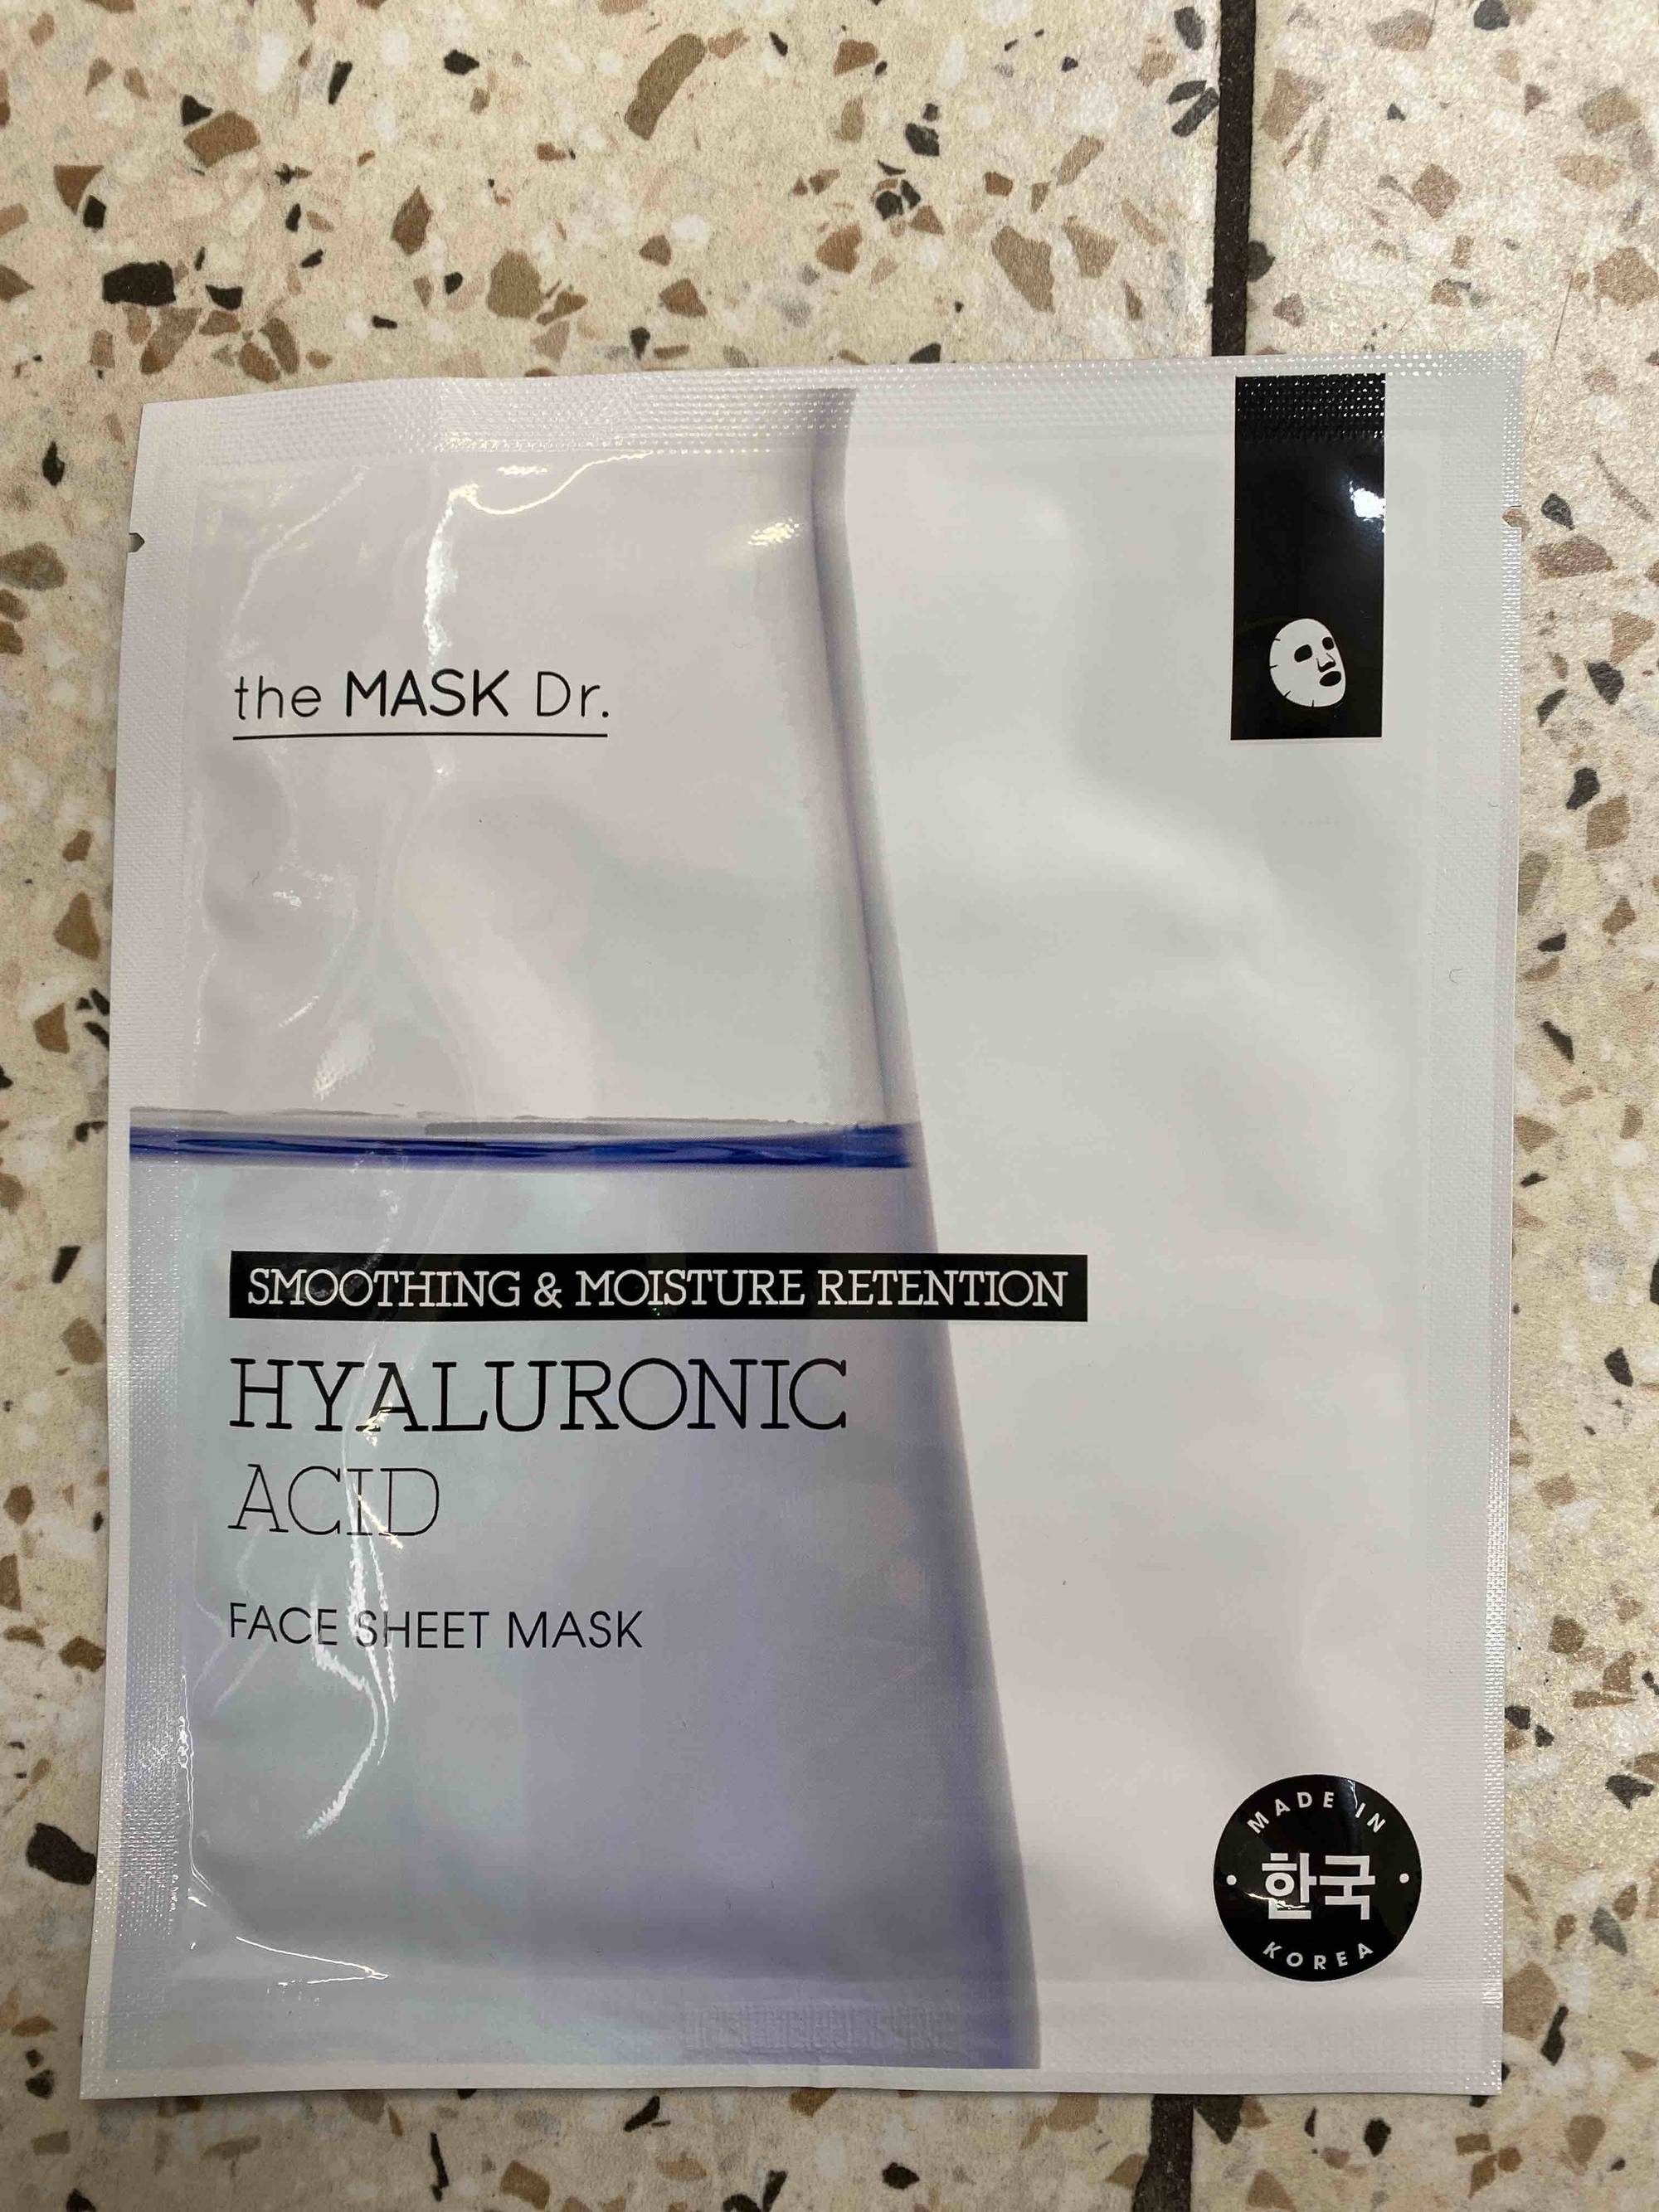 TH MASK DR. - Hyaluronic acid - Face sheet mask